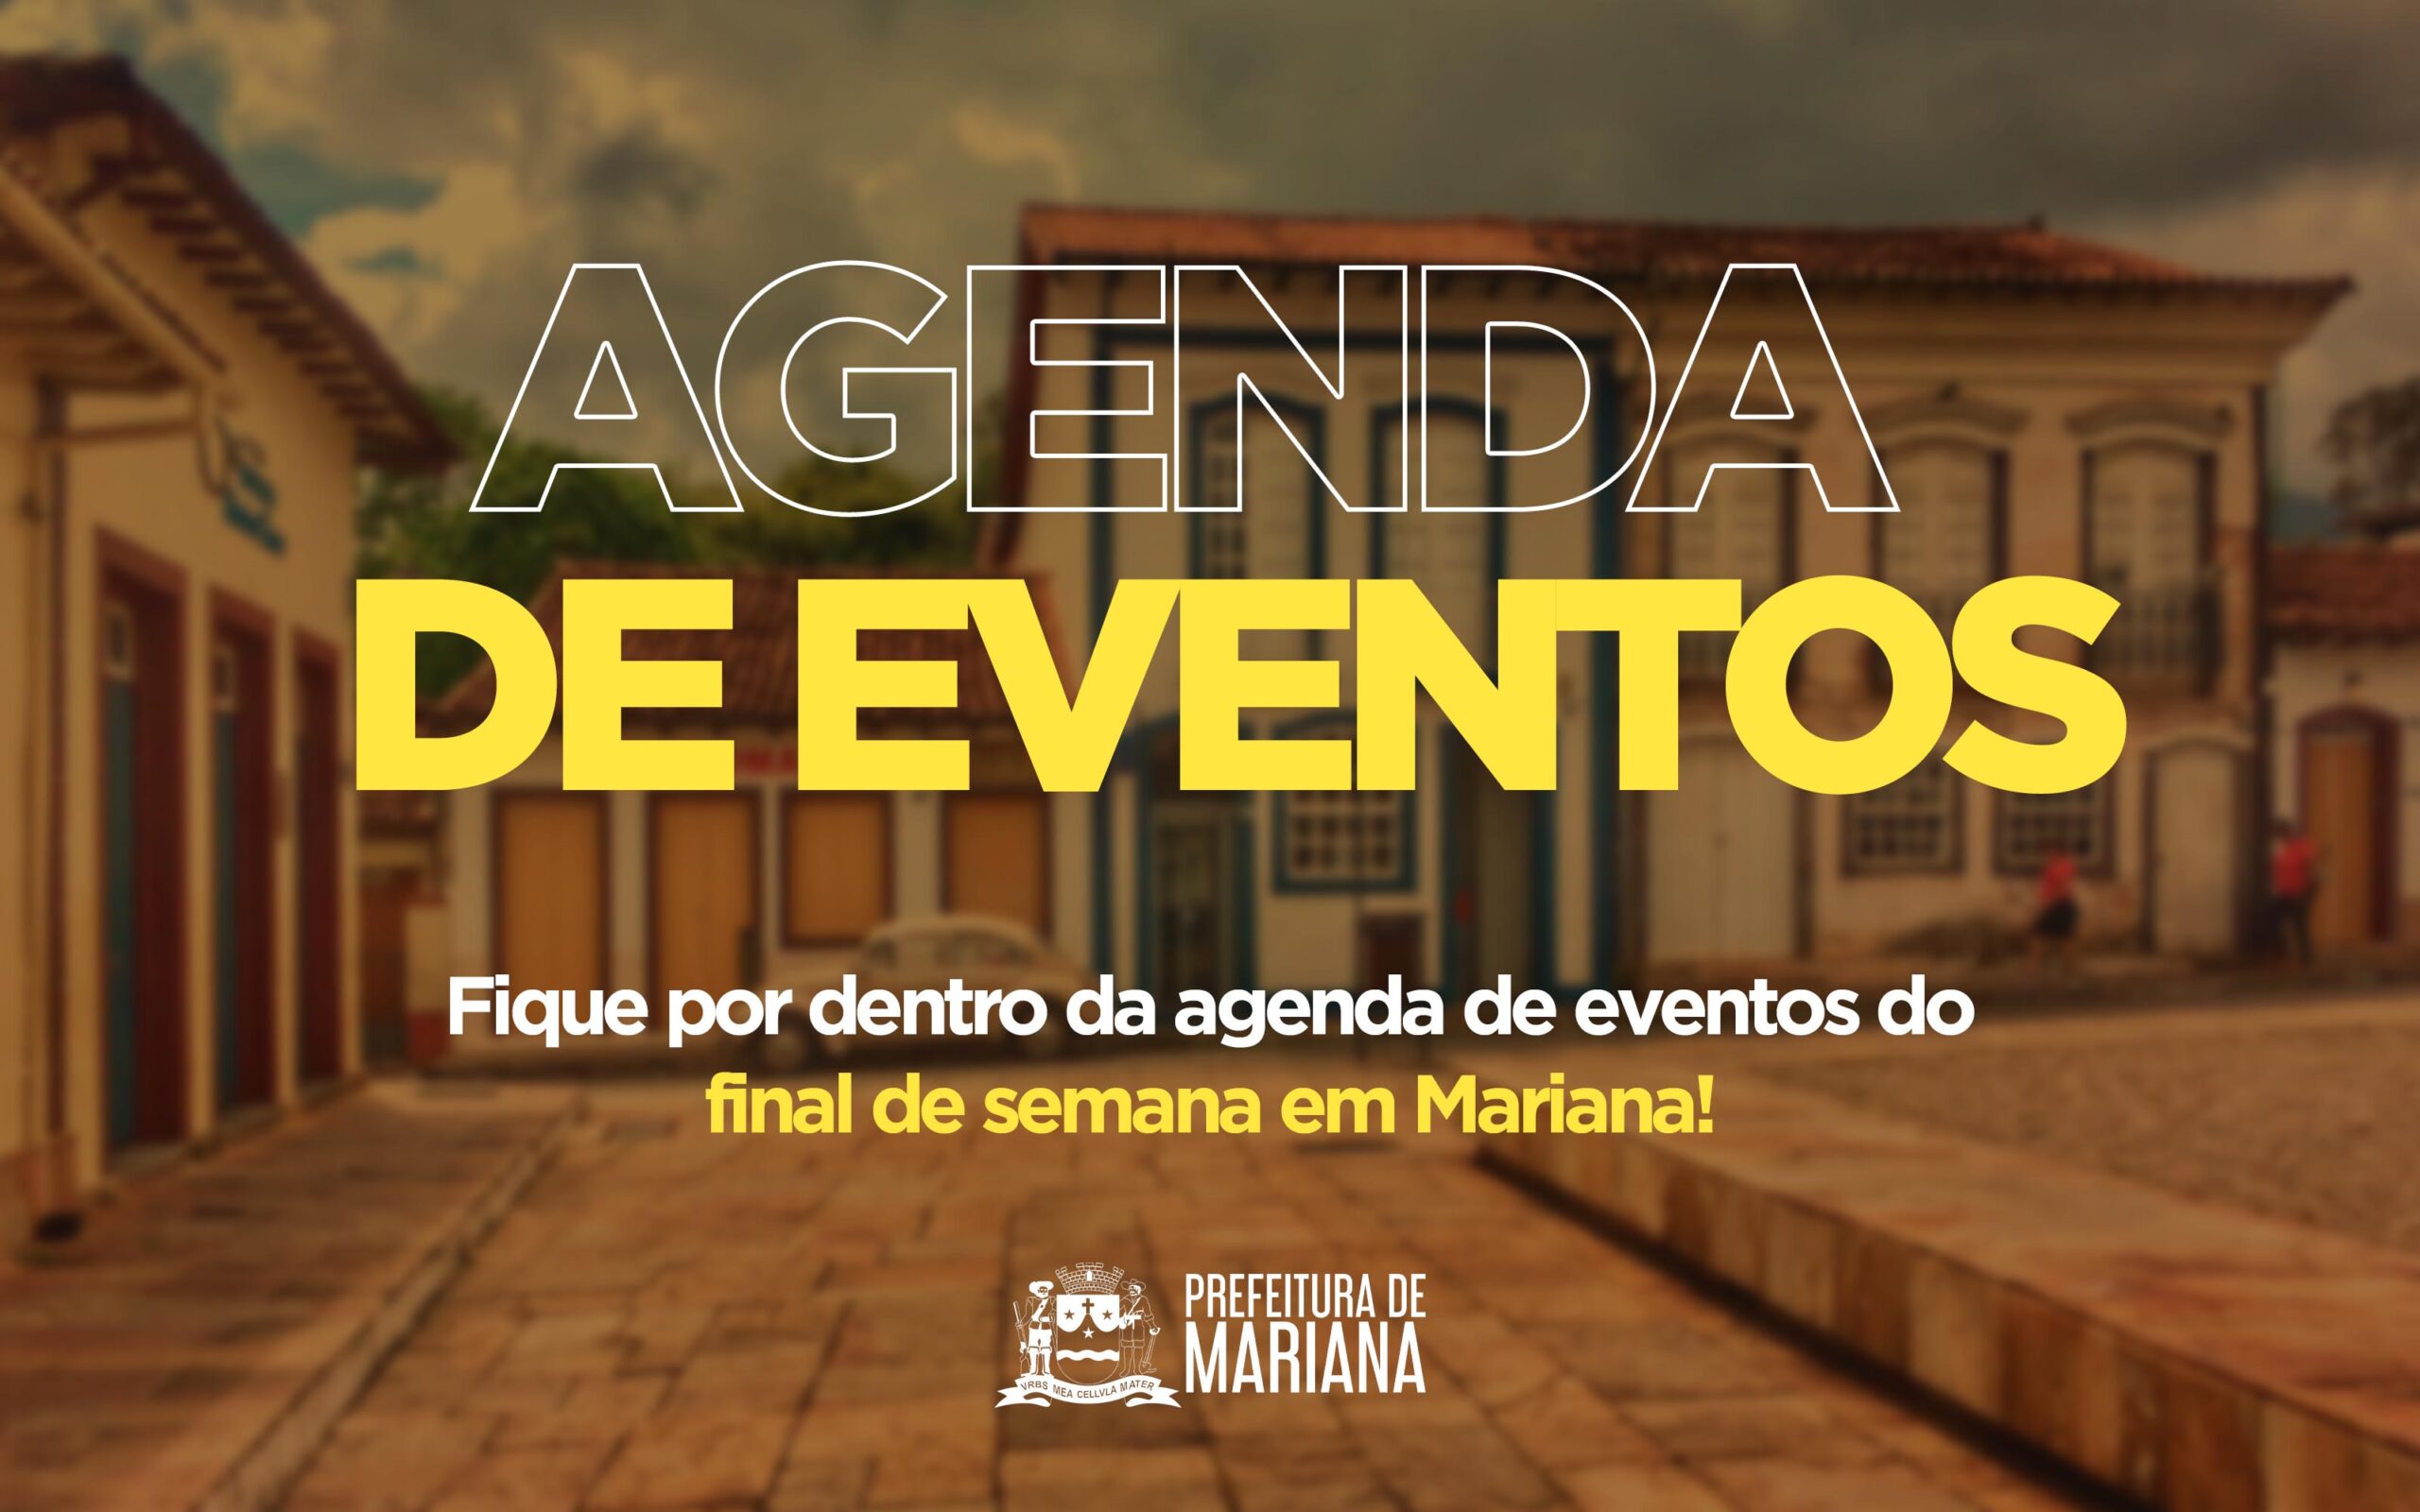 Agenda de eventos do final de semana, em Mariana-MG